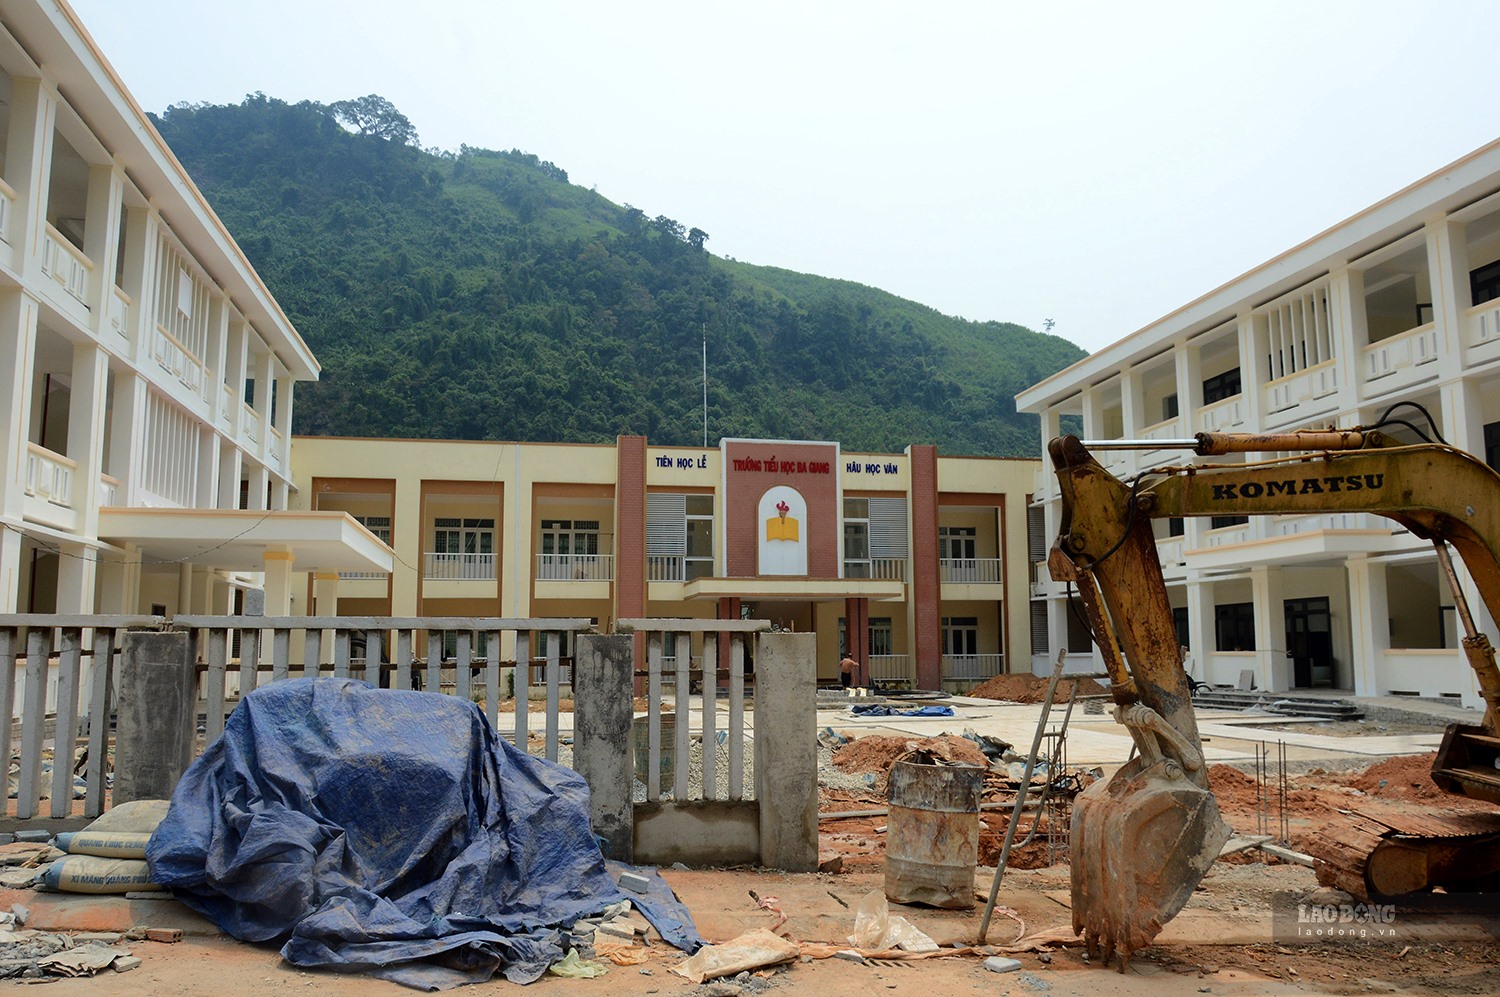 Trường học được đầu tư xây dựng ở Trung tâm hành chính mới vẫn còn rất ngổn ngang. Ảnh: Ngọc Viên